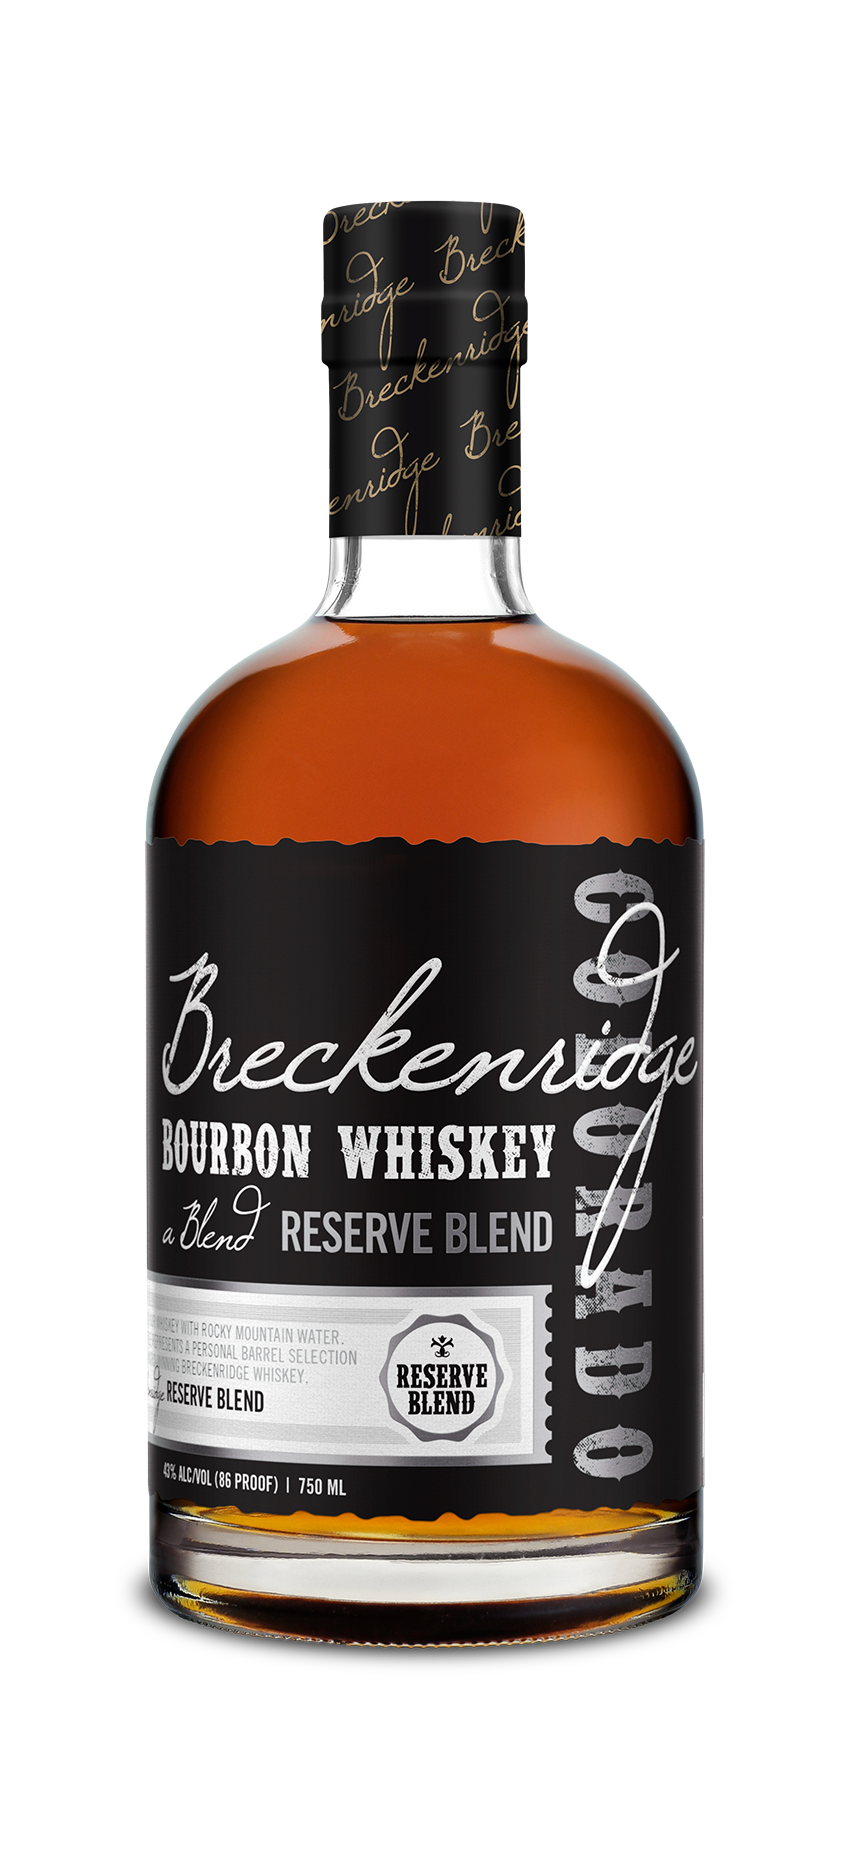 Breckenridge Bourbon Whiskey Reserve Blend Bottle 750 mL